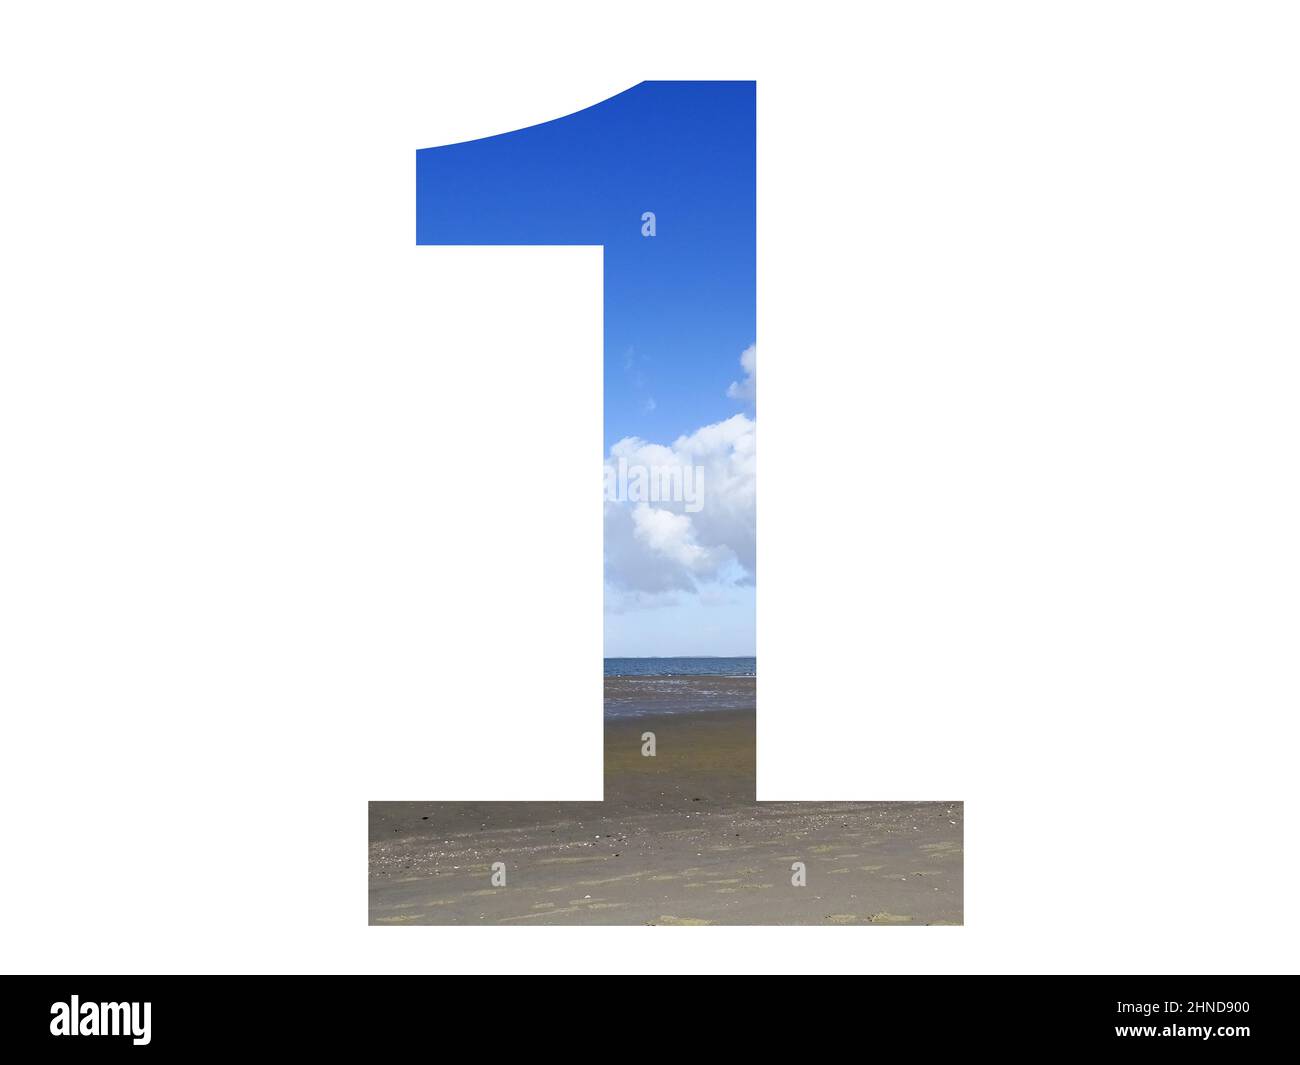 Nummer 1 des Alphabets mit Strand, Meer und blauem Himmel, Nordsee, Niederlande, isoliert auf weißem Hintergrund Stockfoto